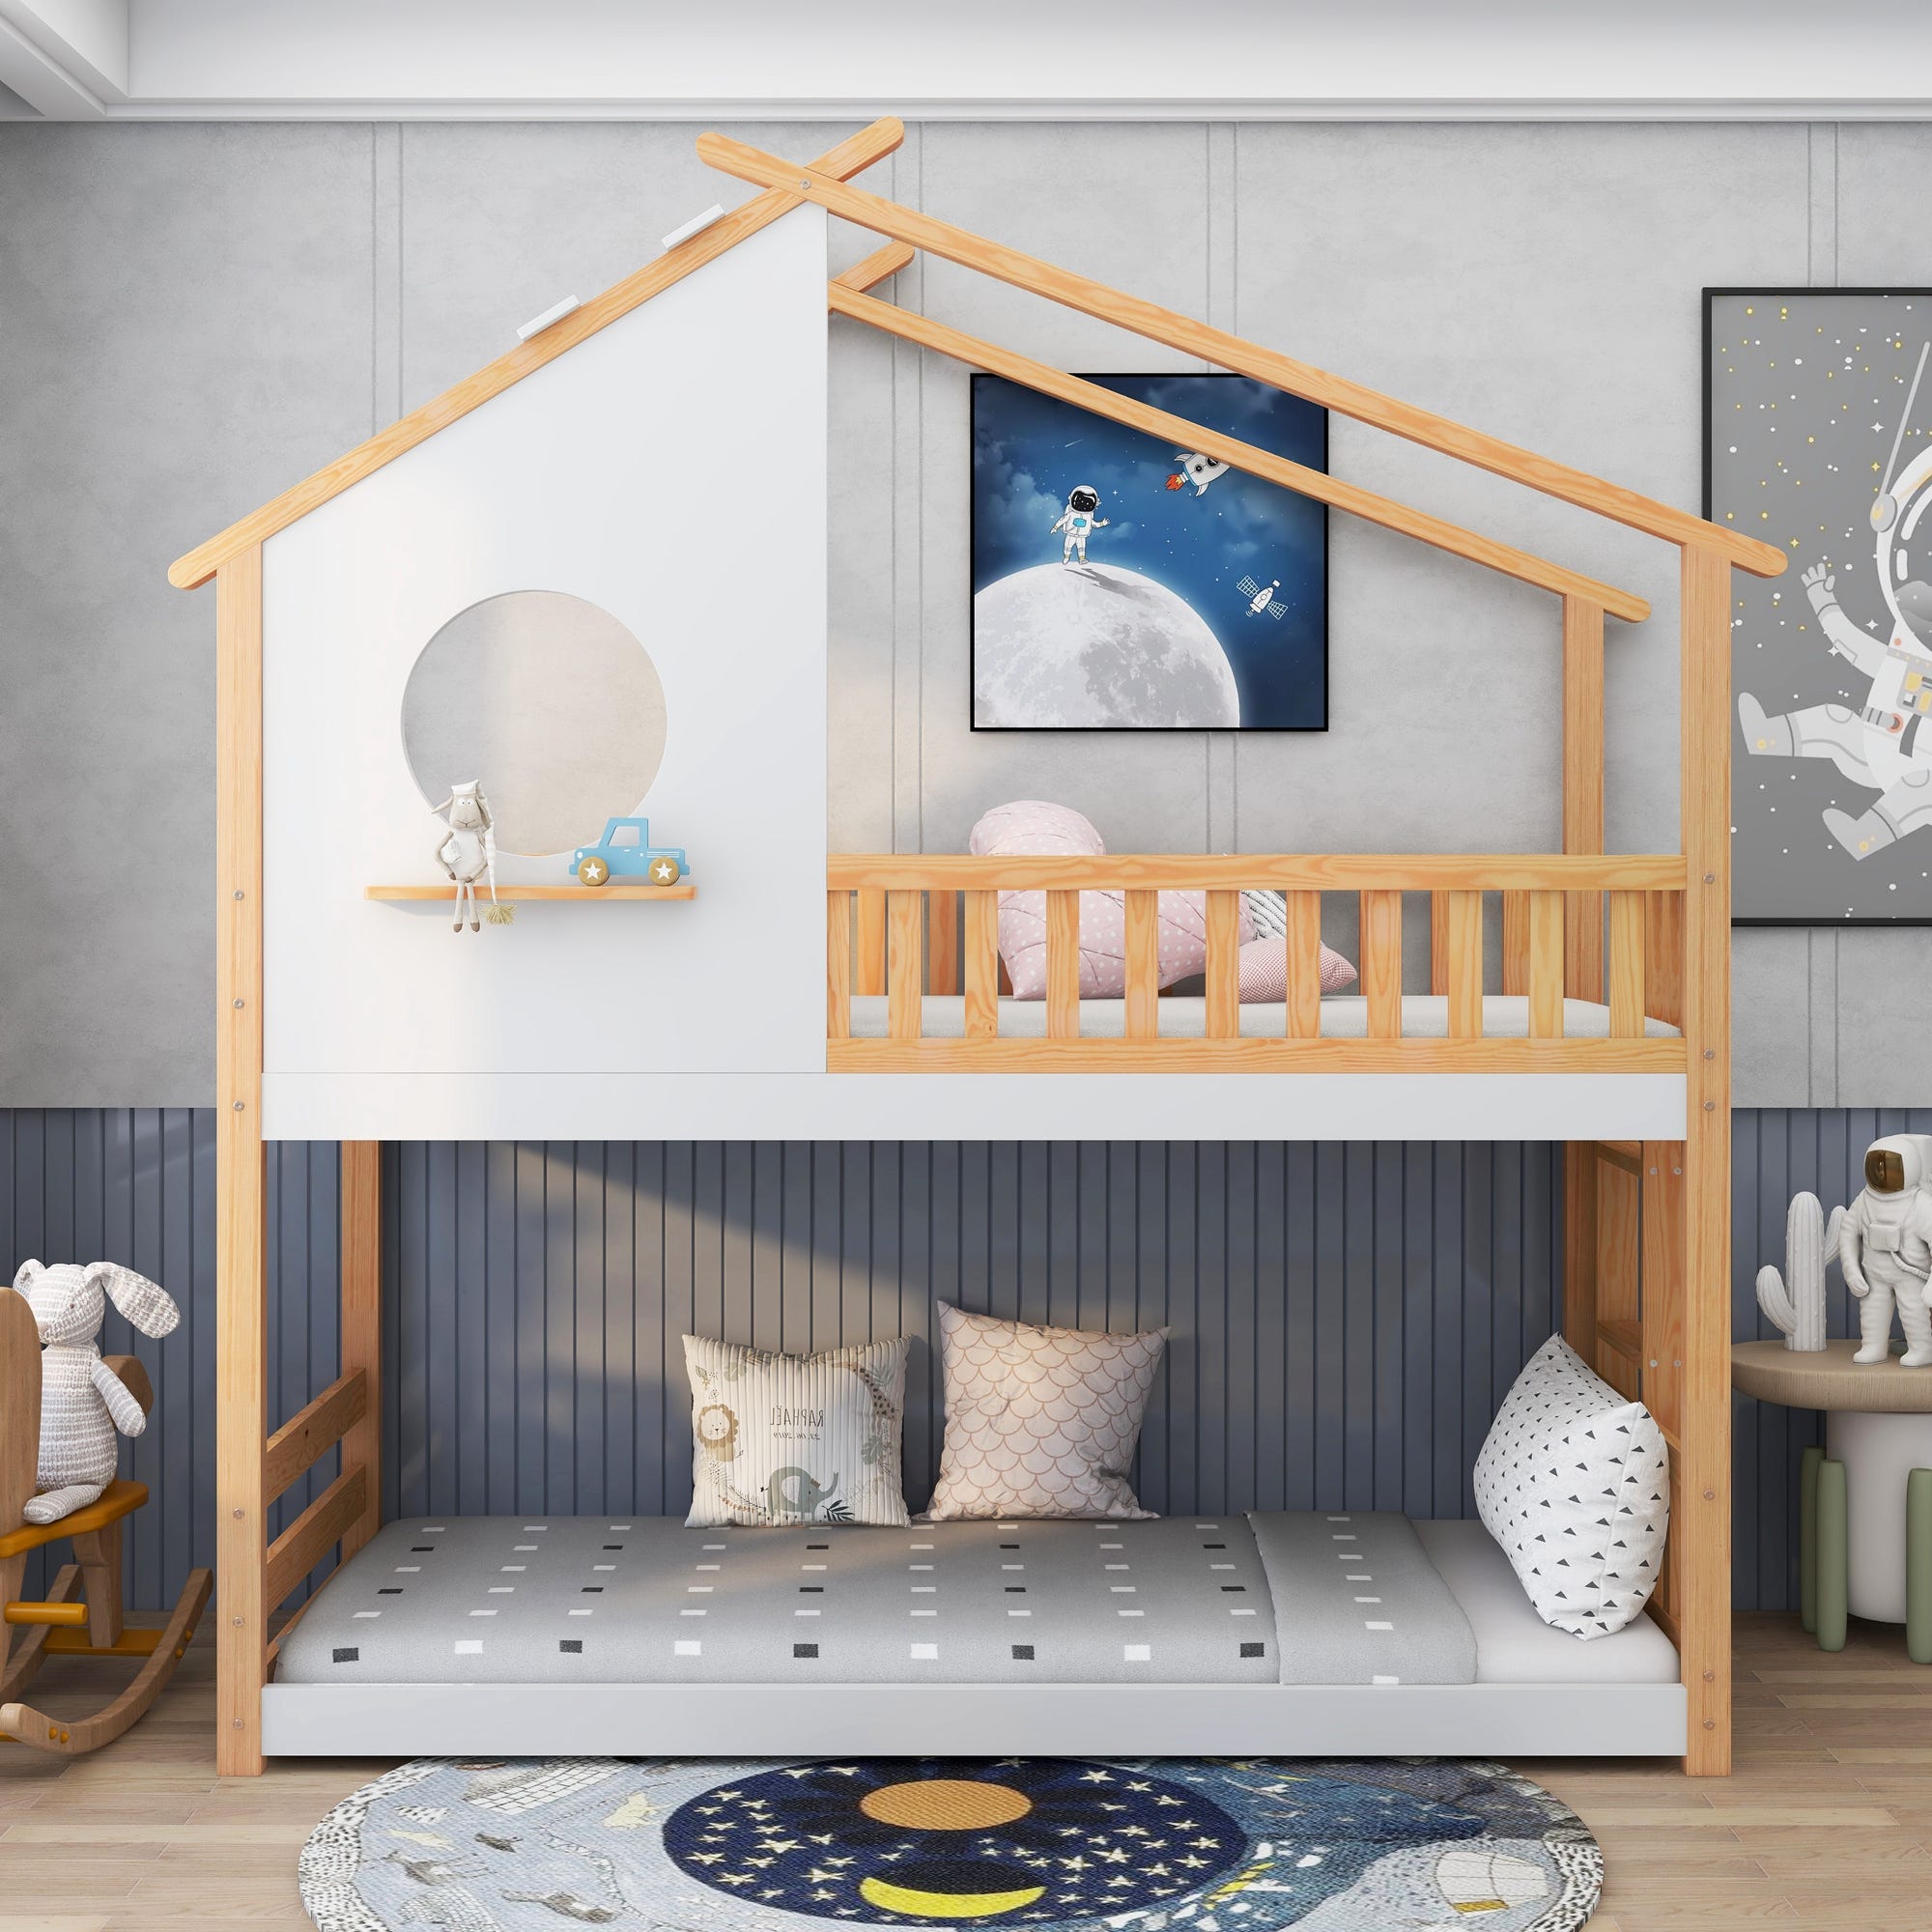 Litera tren con casita – Kids House Furniture